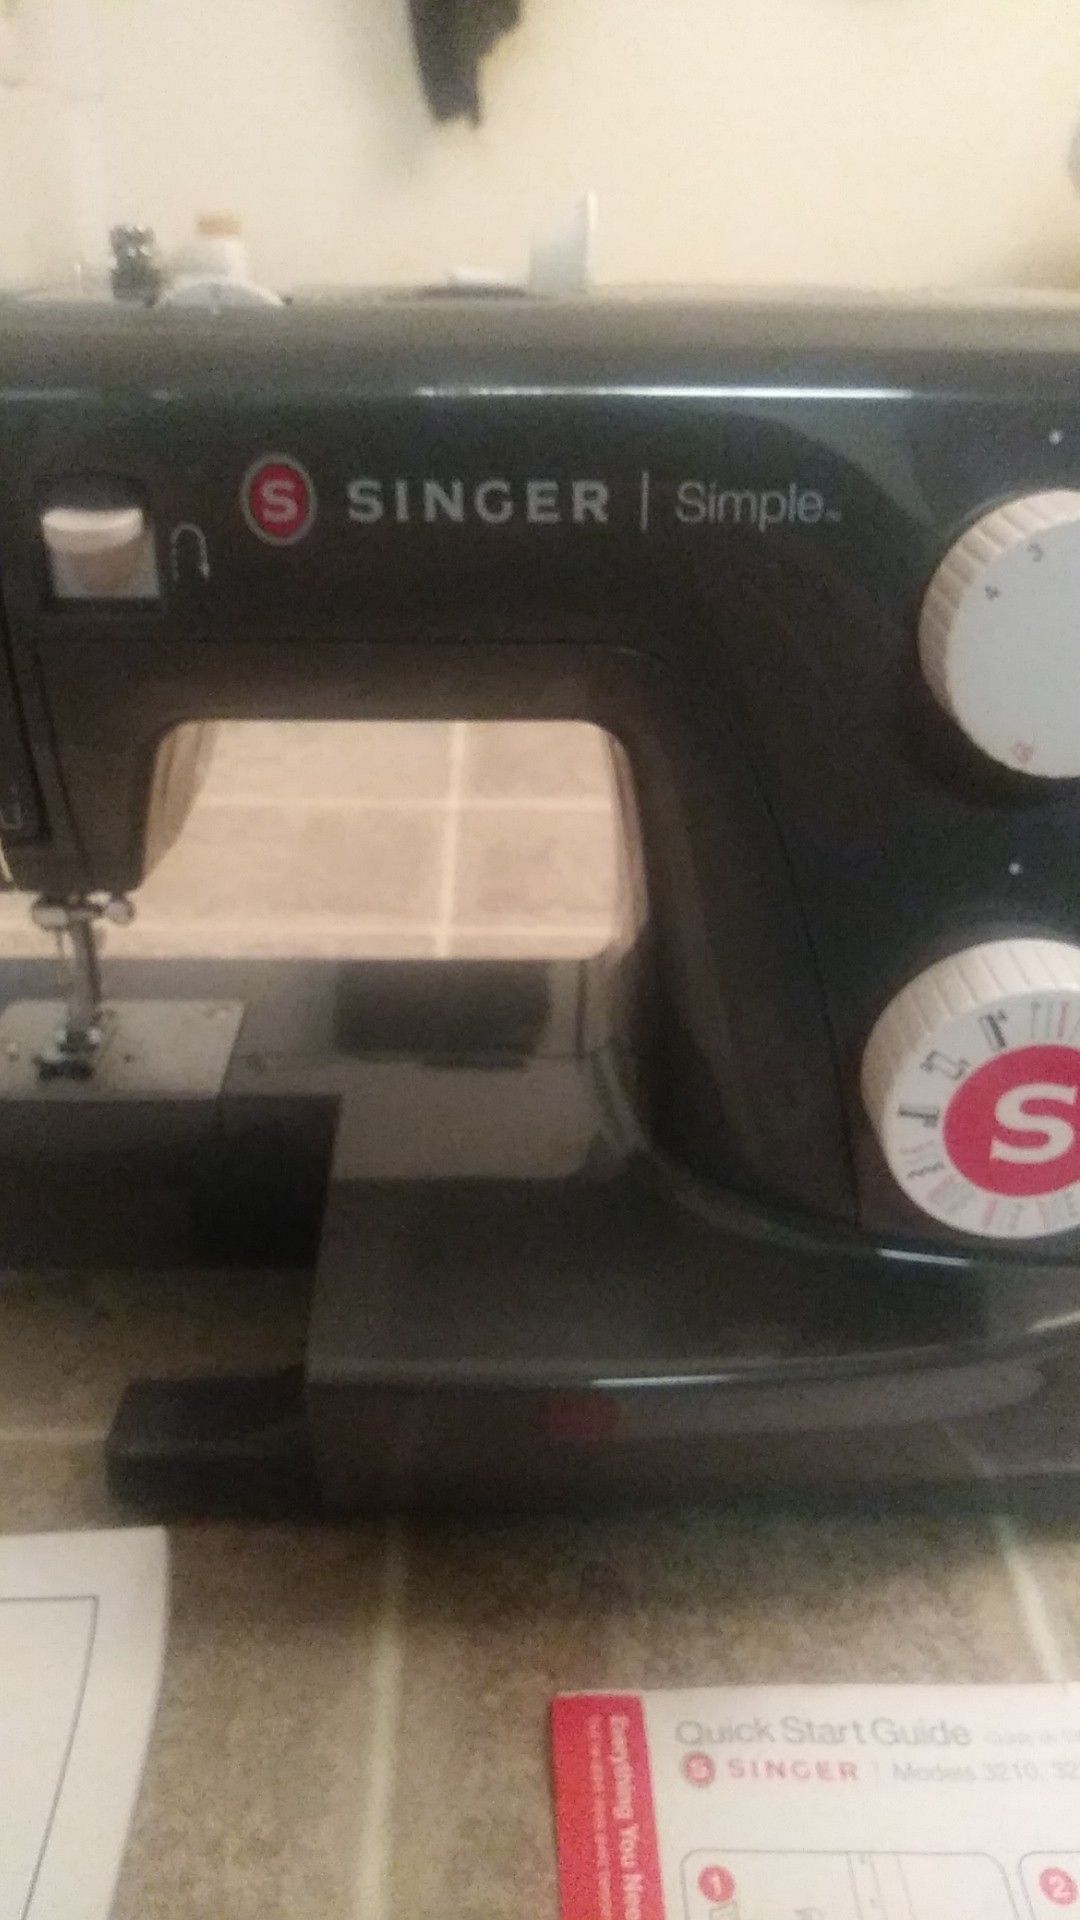 New singer sewing maching